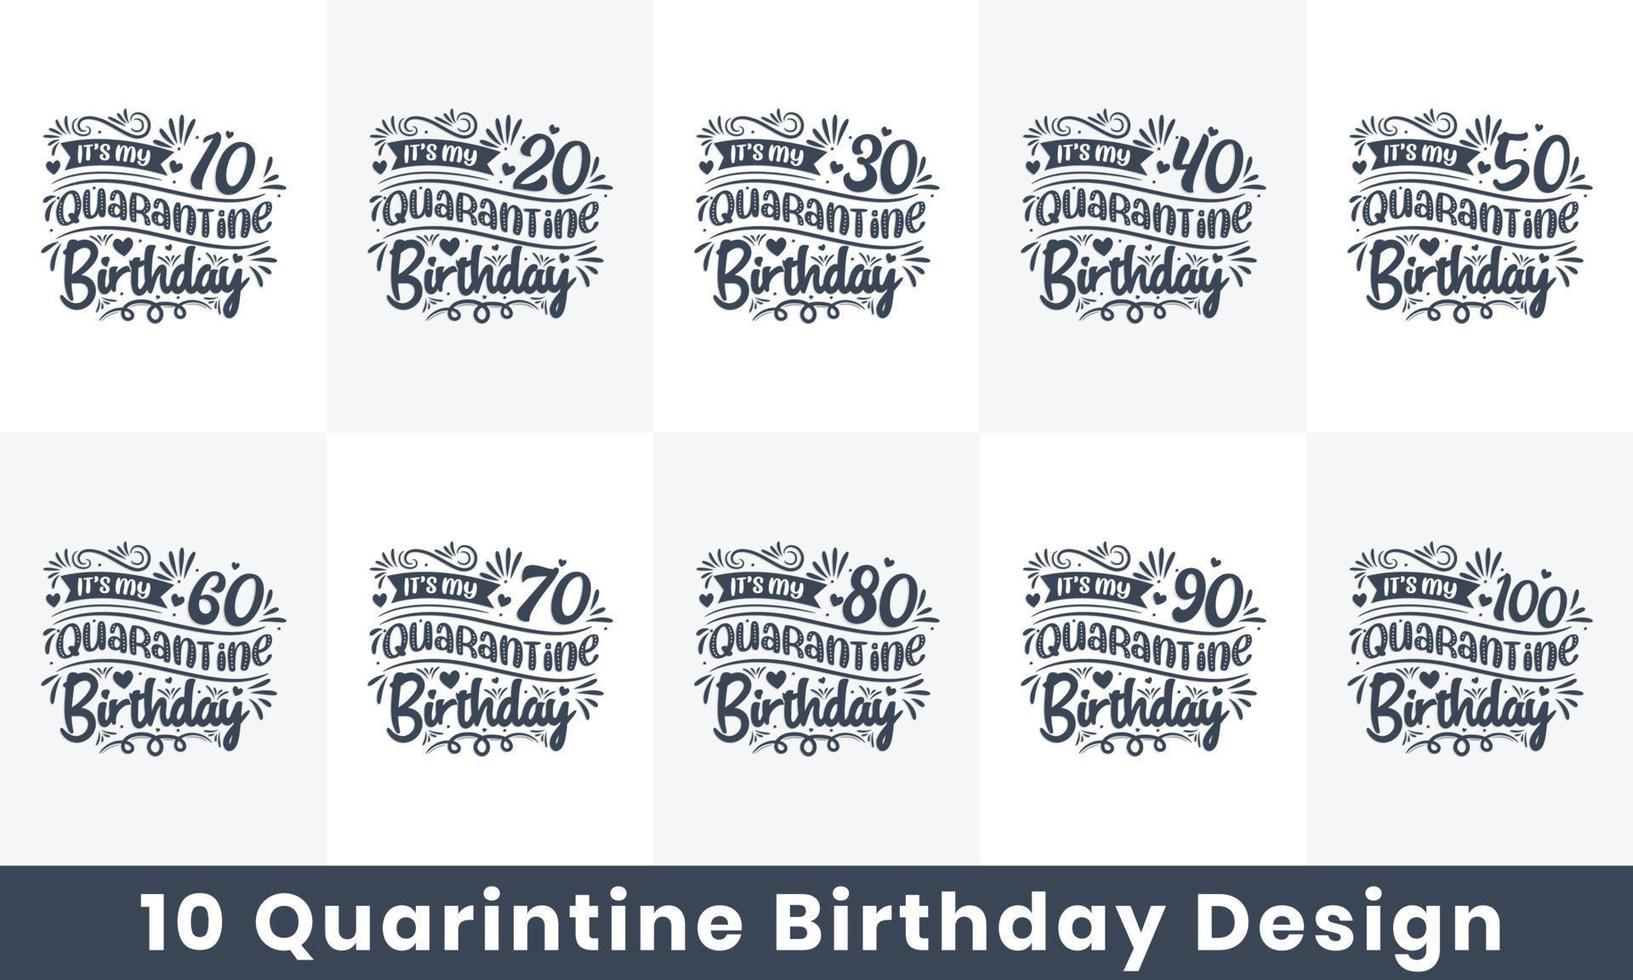 karantän födelsedag design bunt. 10 födelsedag citat firande typografi bunt. det är min 10, 20, 30, 40, 50, 60, 70, 80, 90, 100 karantänfödelsedagen vektor